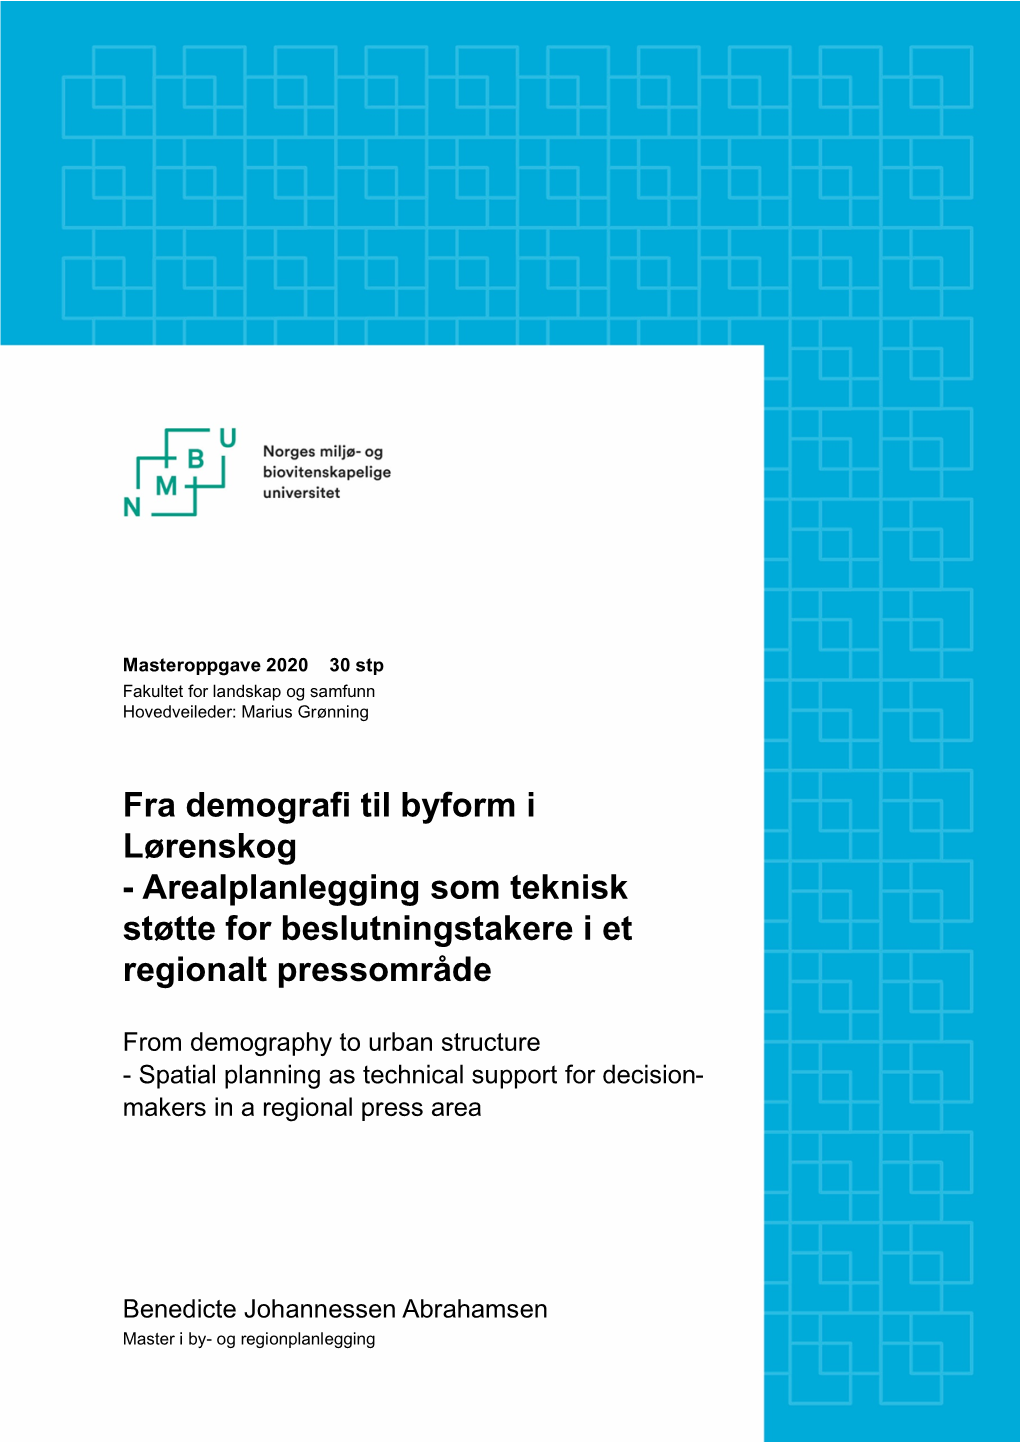 Fra Demografi Til Byform I Lørenskog - Arealplanlegging Som Teknisk Støtte for Beslutningstakere I Et Regionalt Pressområde